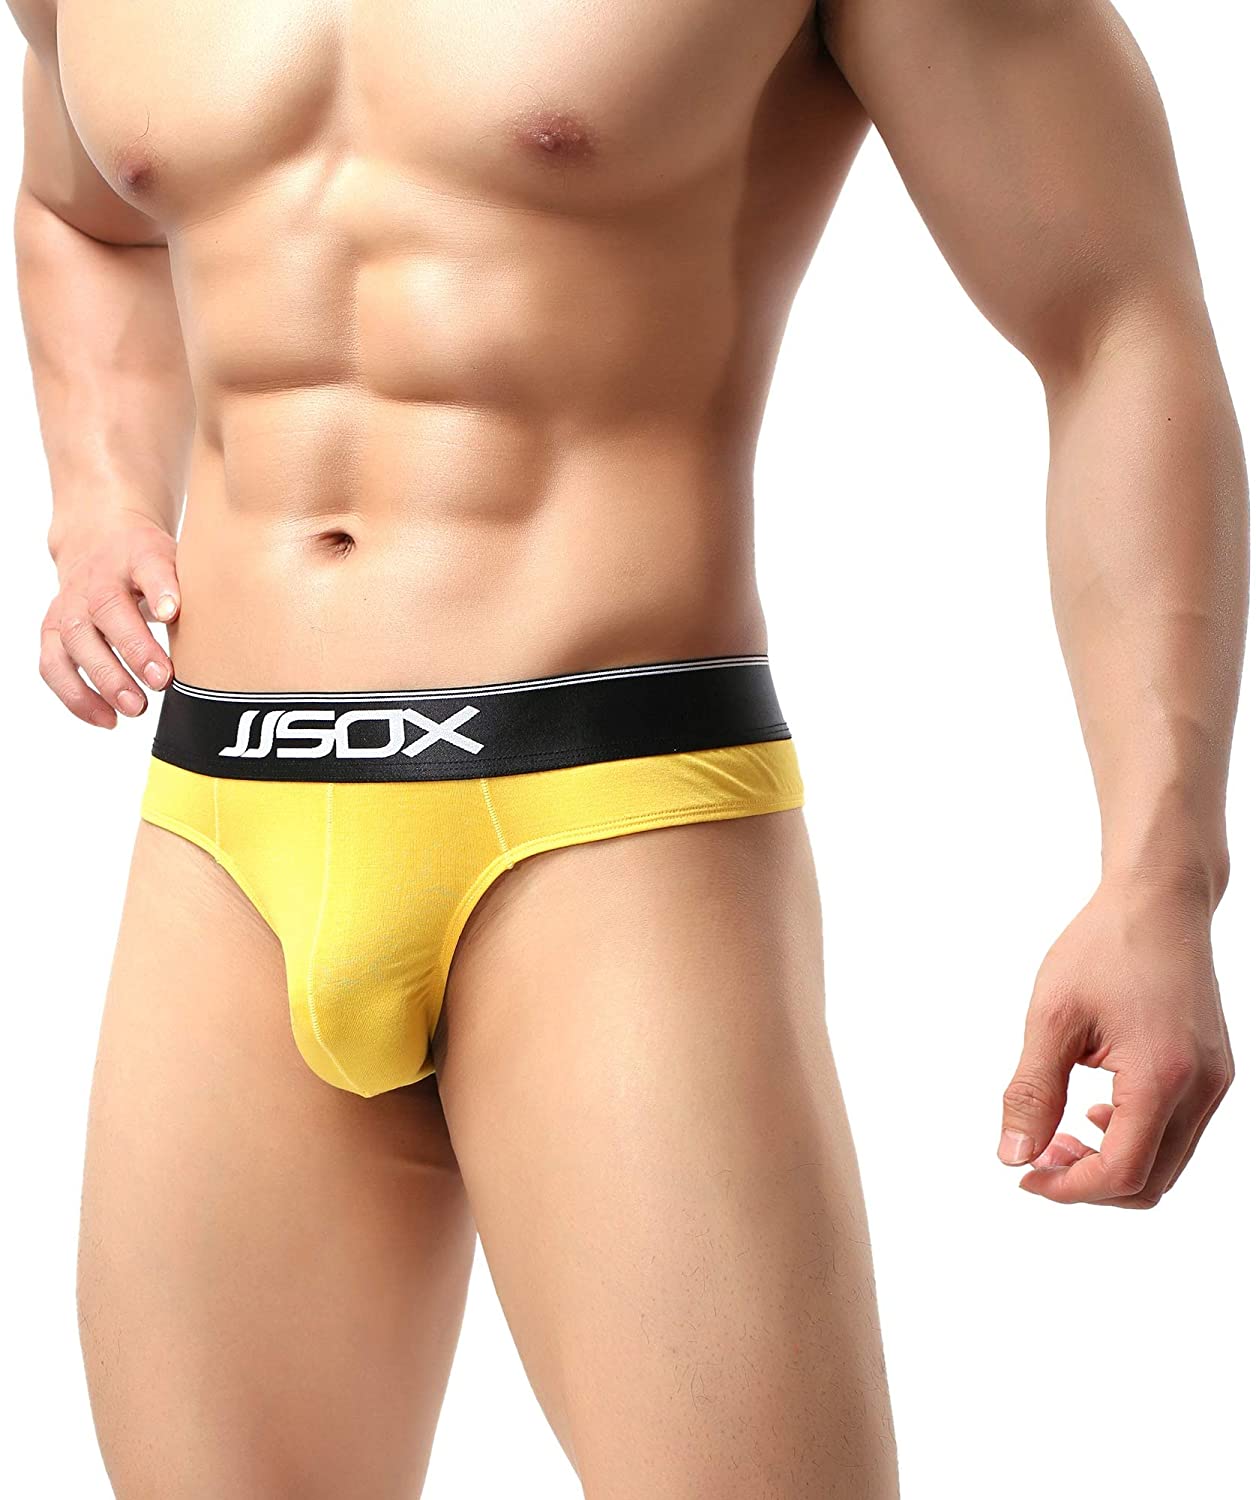 Image of JJSOX Cotton Thong